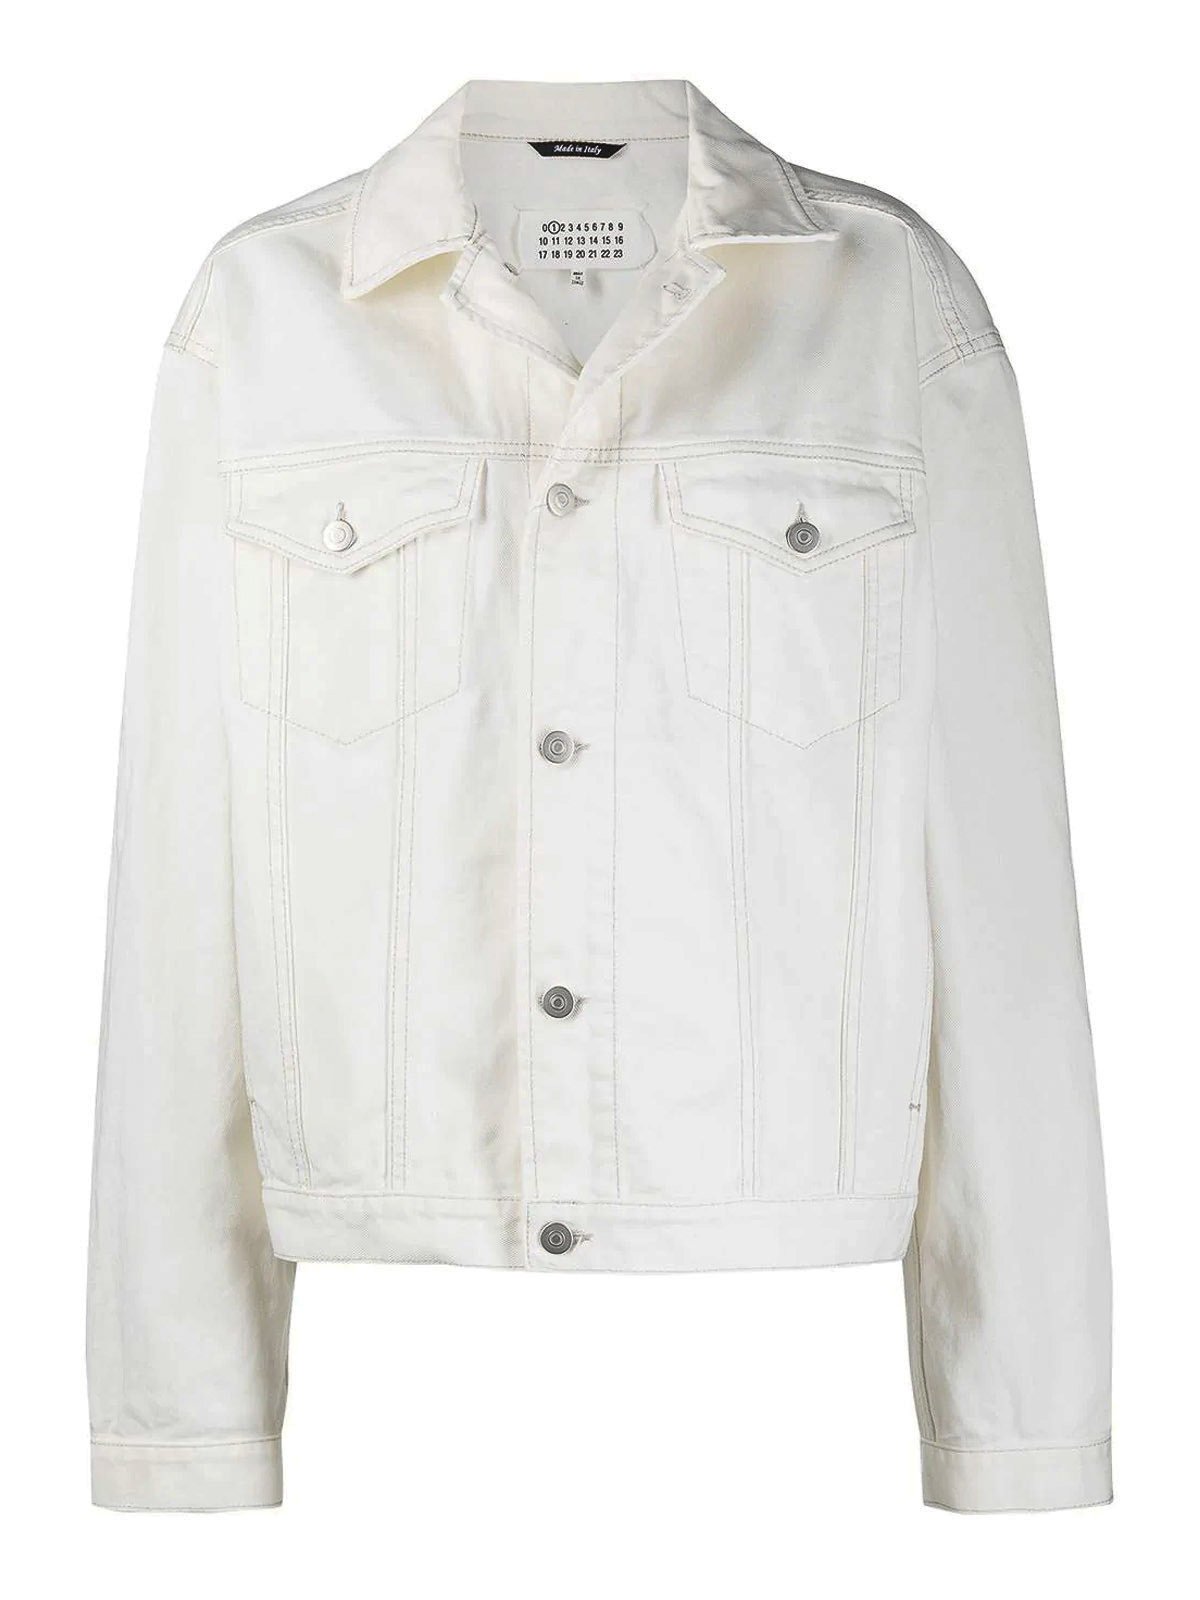 Denim jacket Maison Margiela - White denim jacket - S51AM0428S30642101